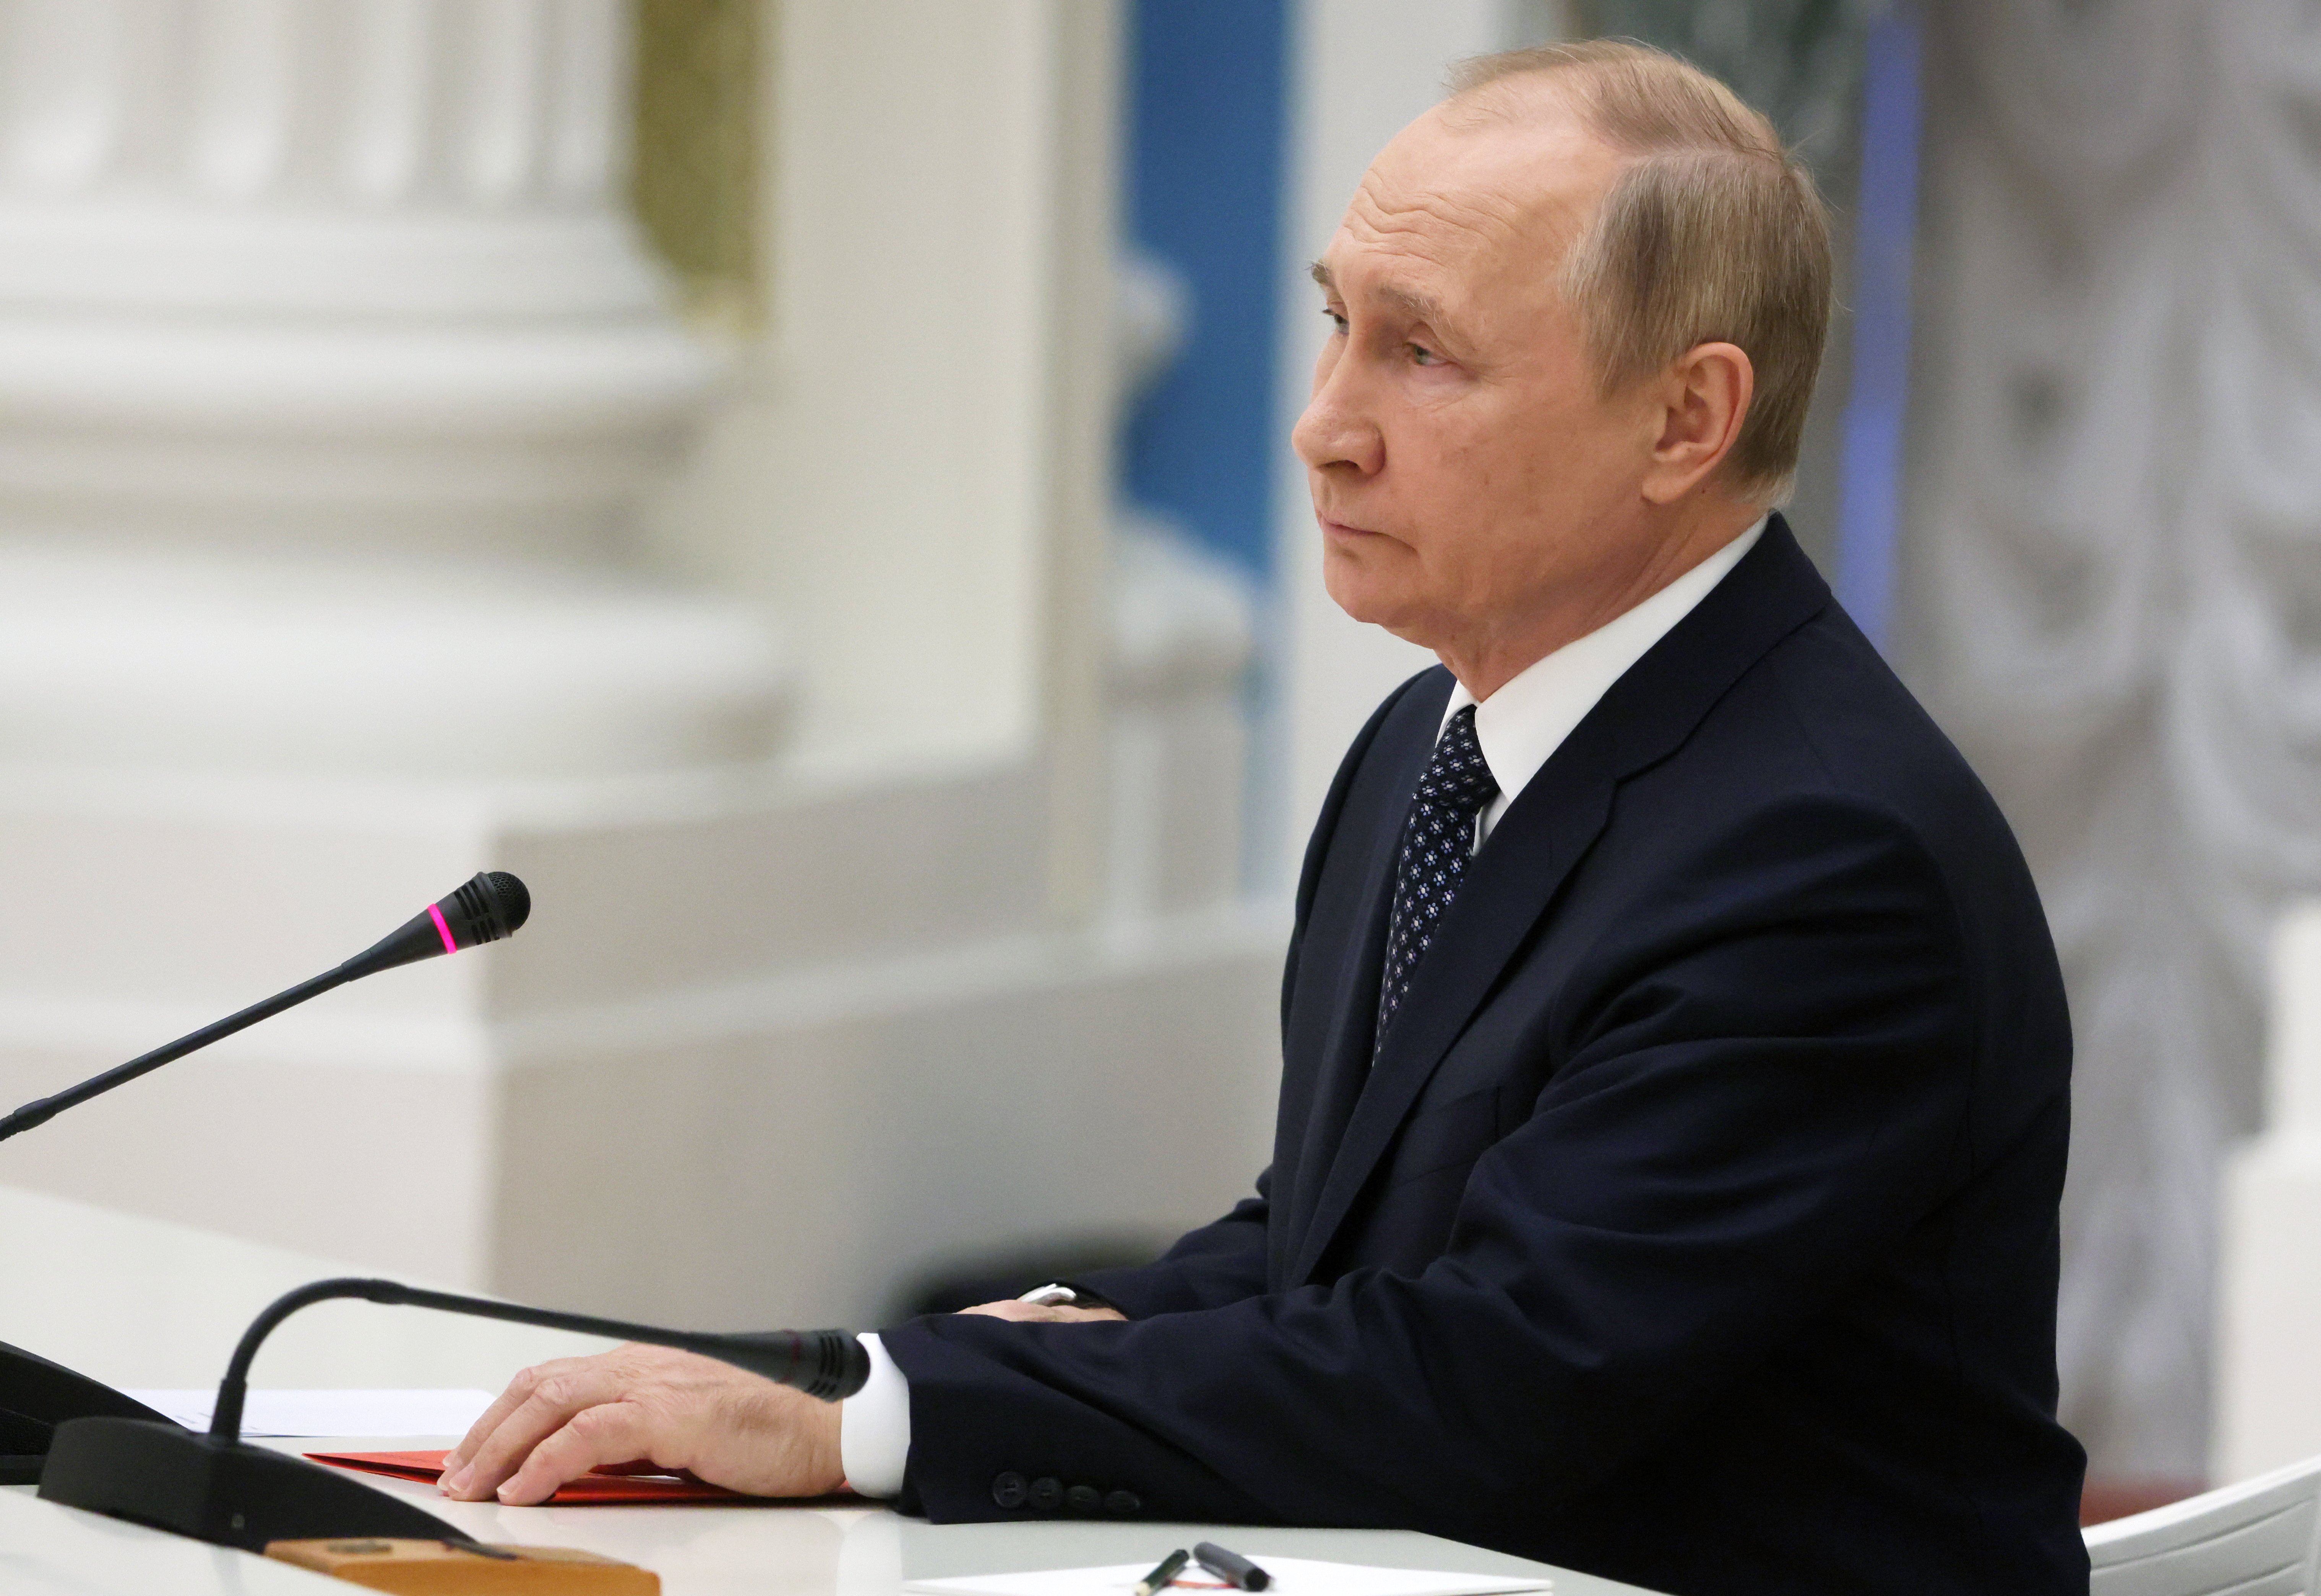 On és Vladímir Putin? El líder rus s'amaga quan les coses a Ucraïna van malament